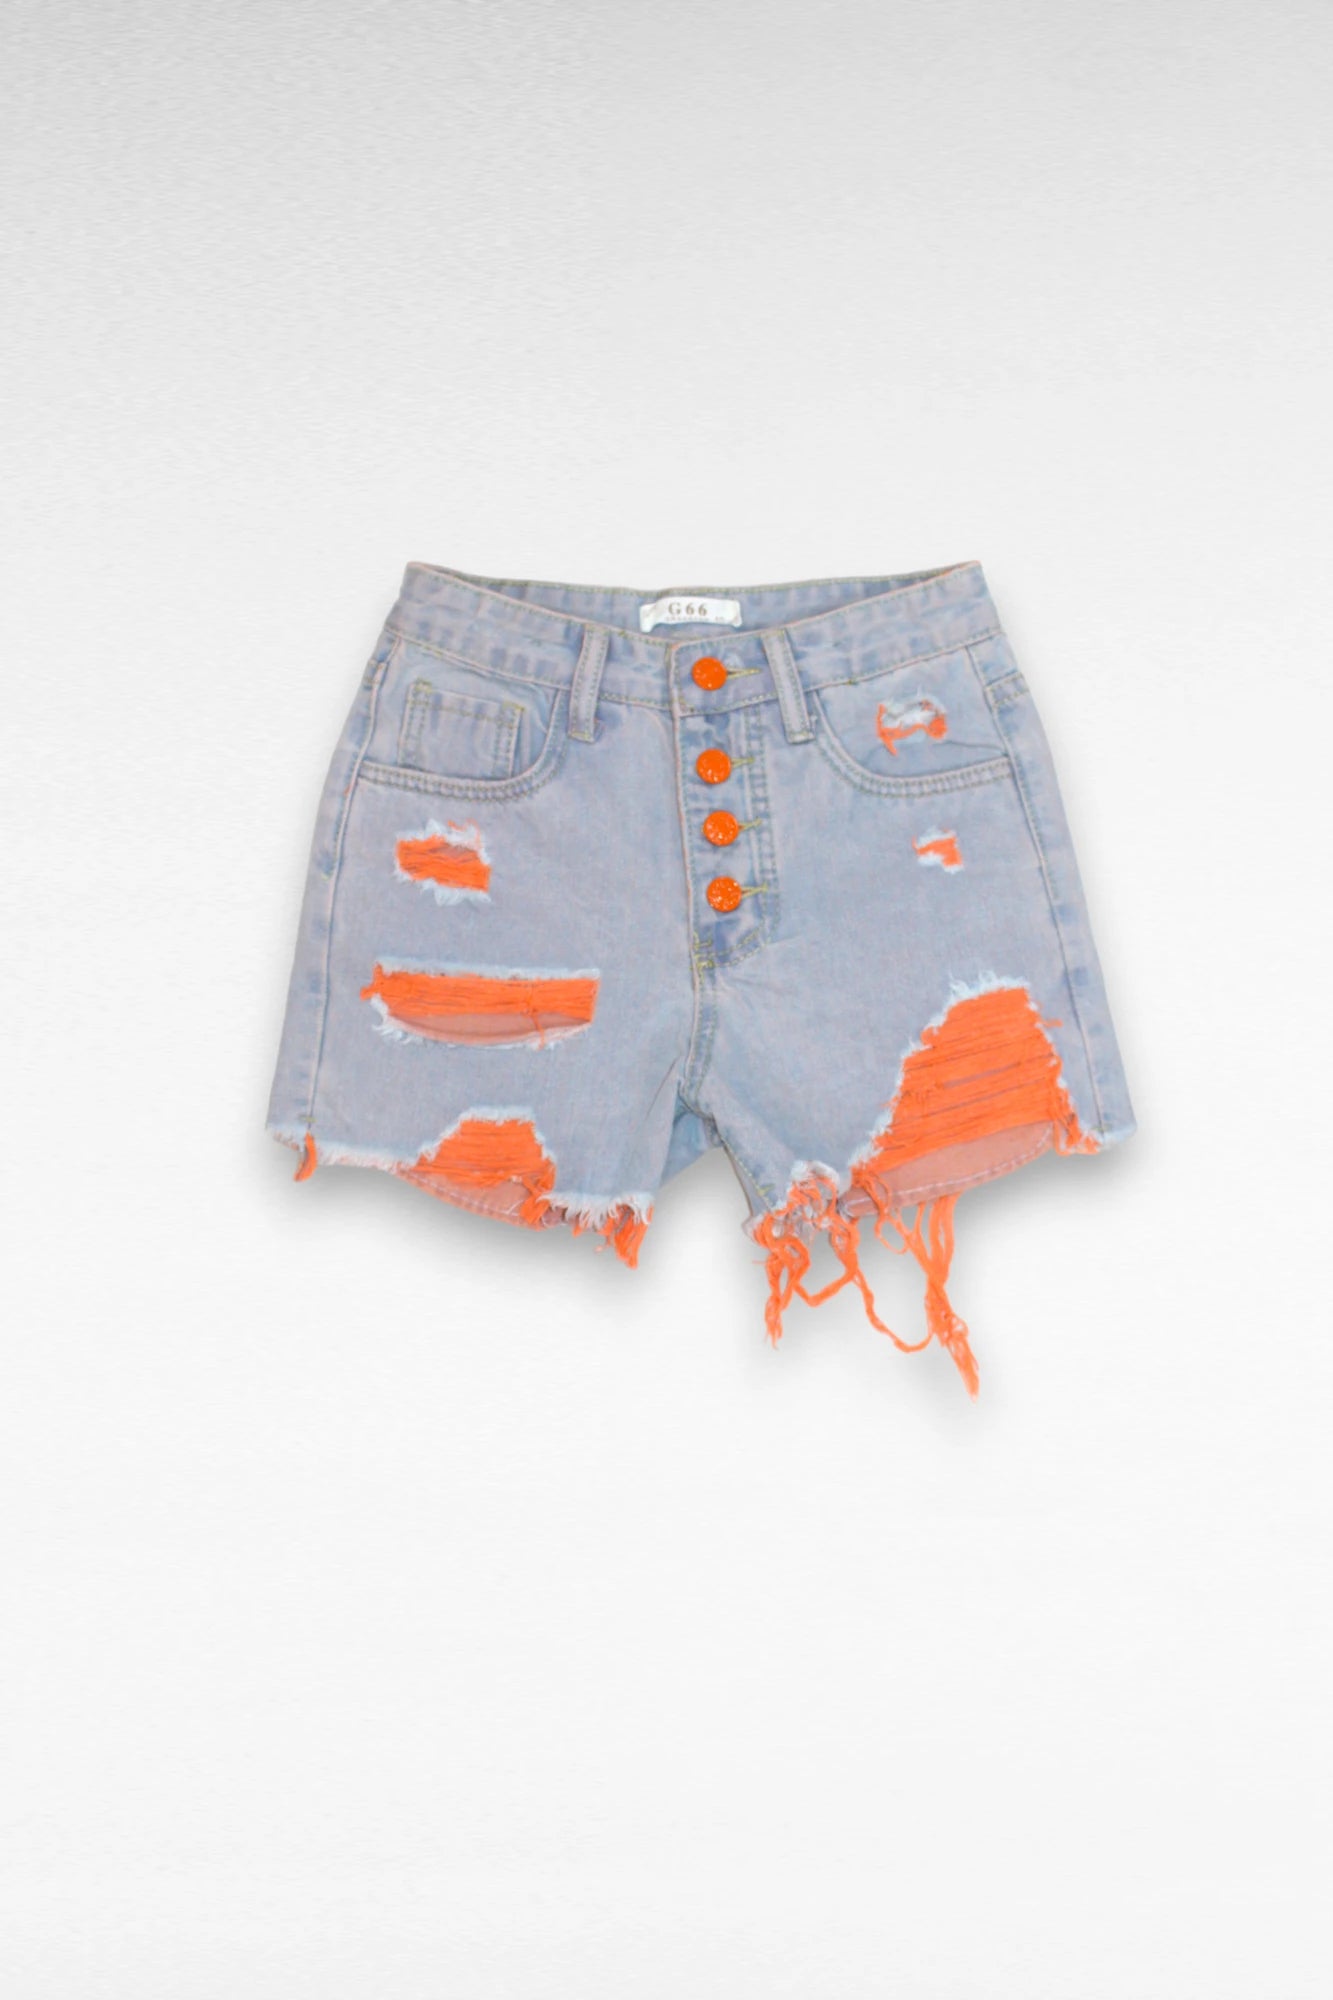 Meisjes set jeans short met oranje topje - L&L kidsmode